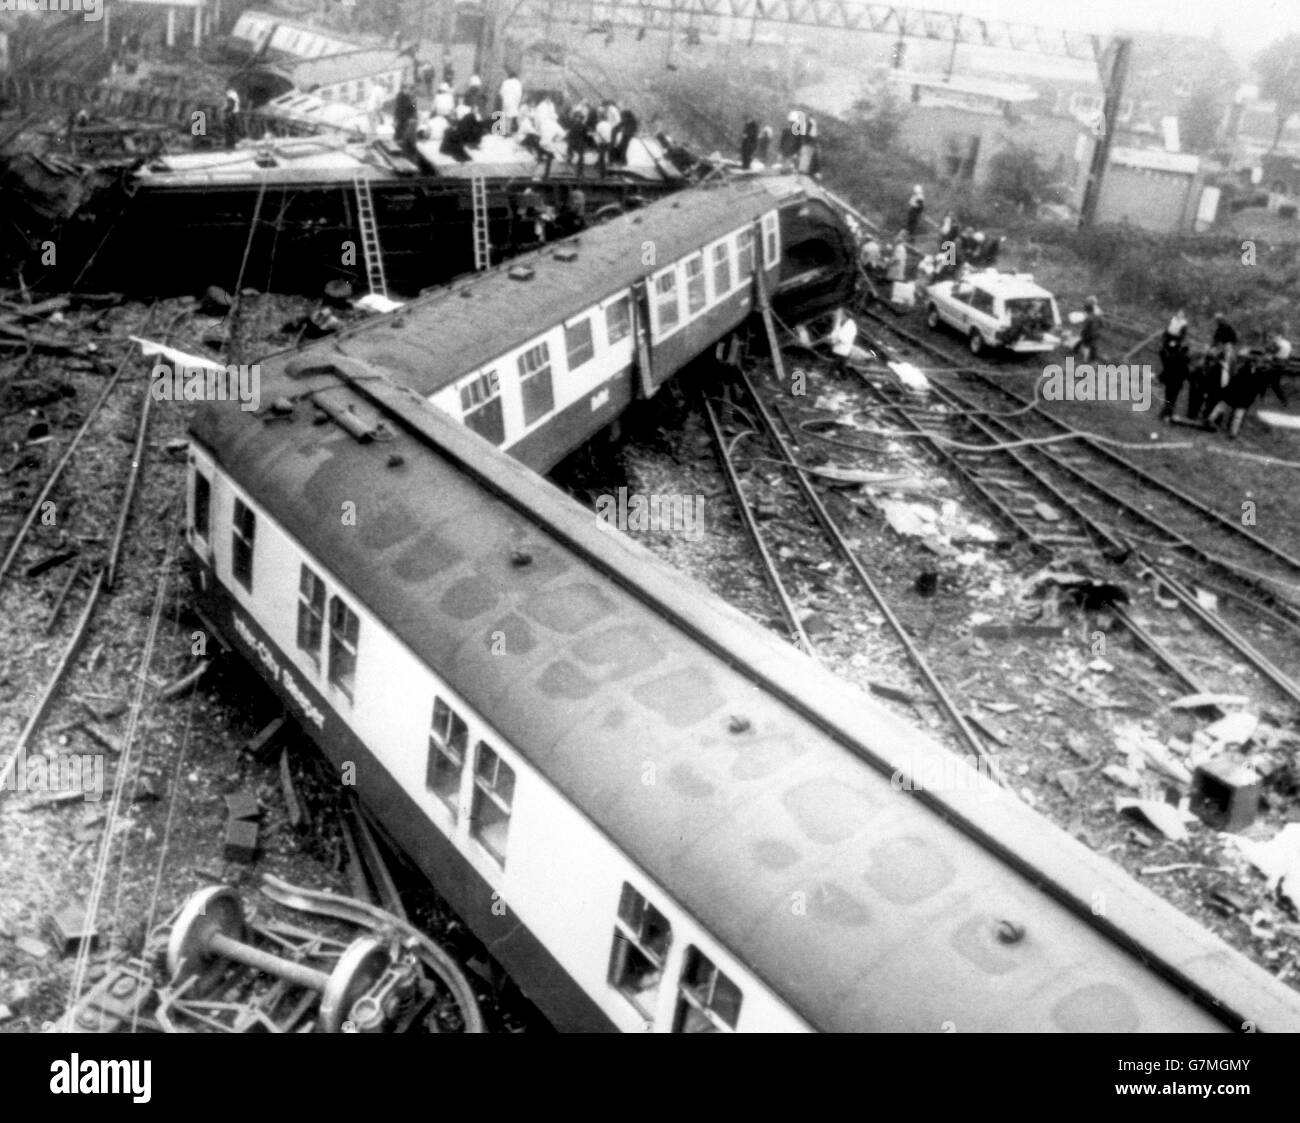 Vista general del durmiente interurbano desde Londres Euston a Glasgow que se estrelló al acercarse a la estación Trent Valley de Nuneaton. Foto de stock